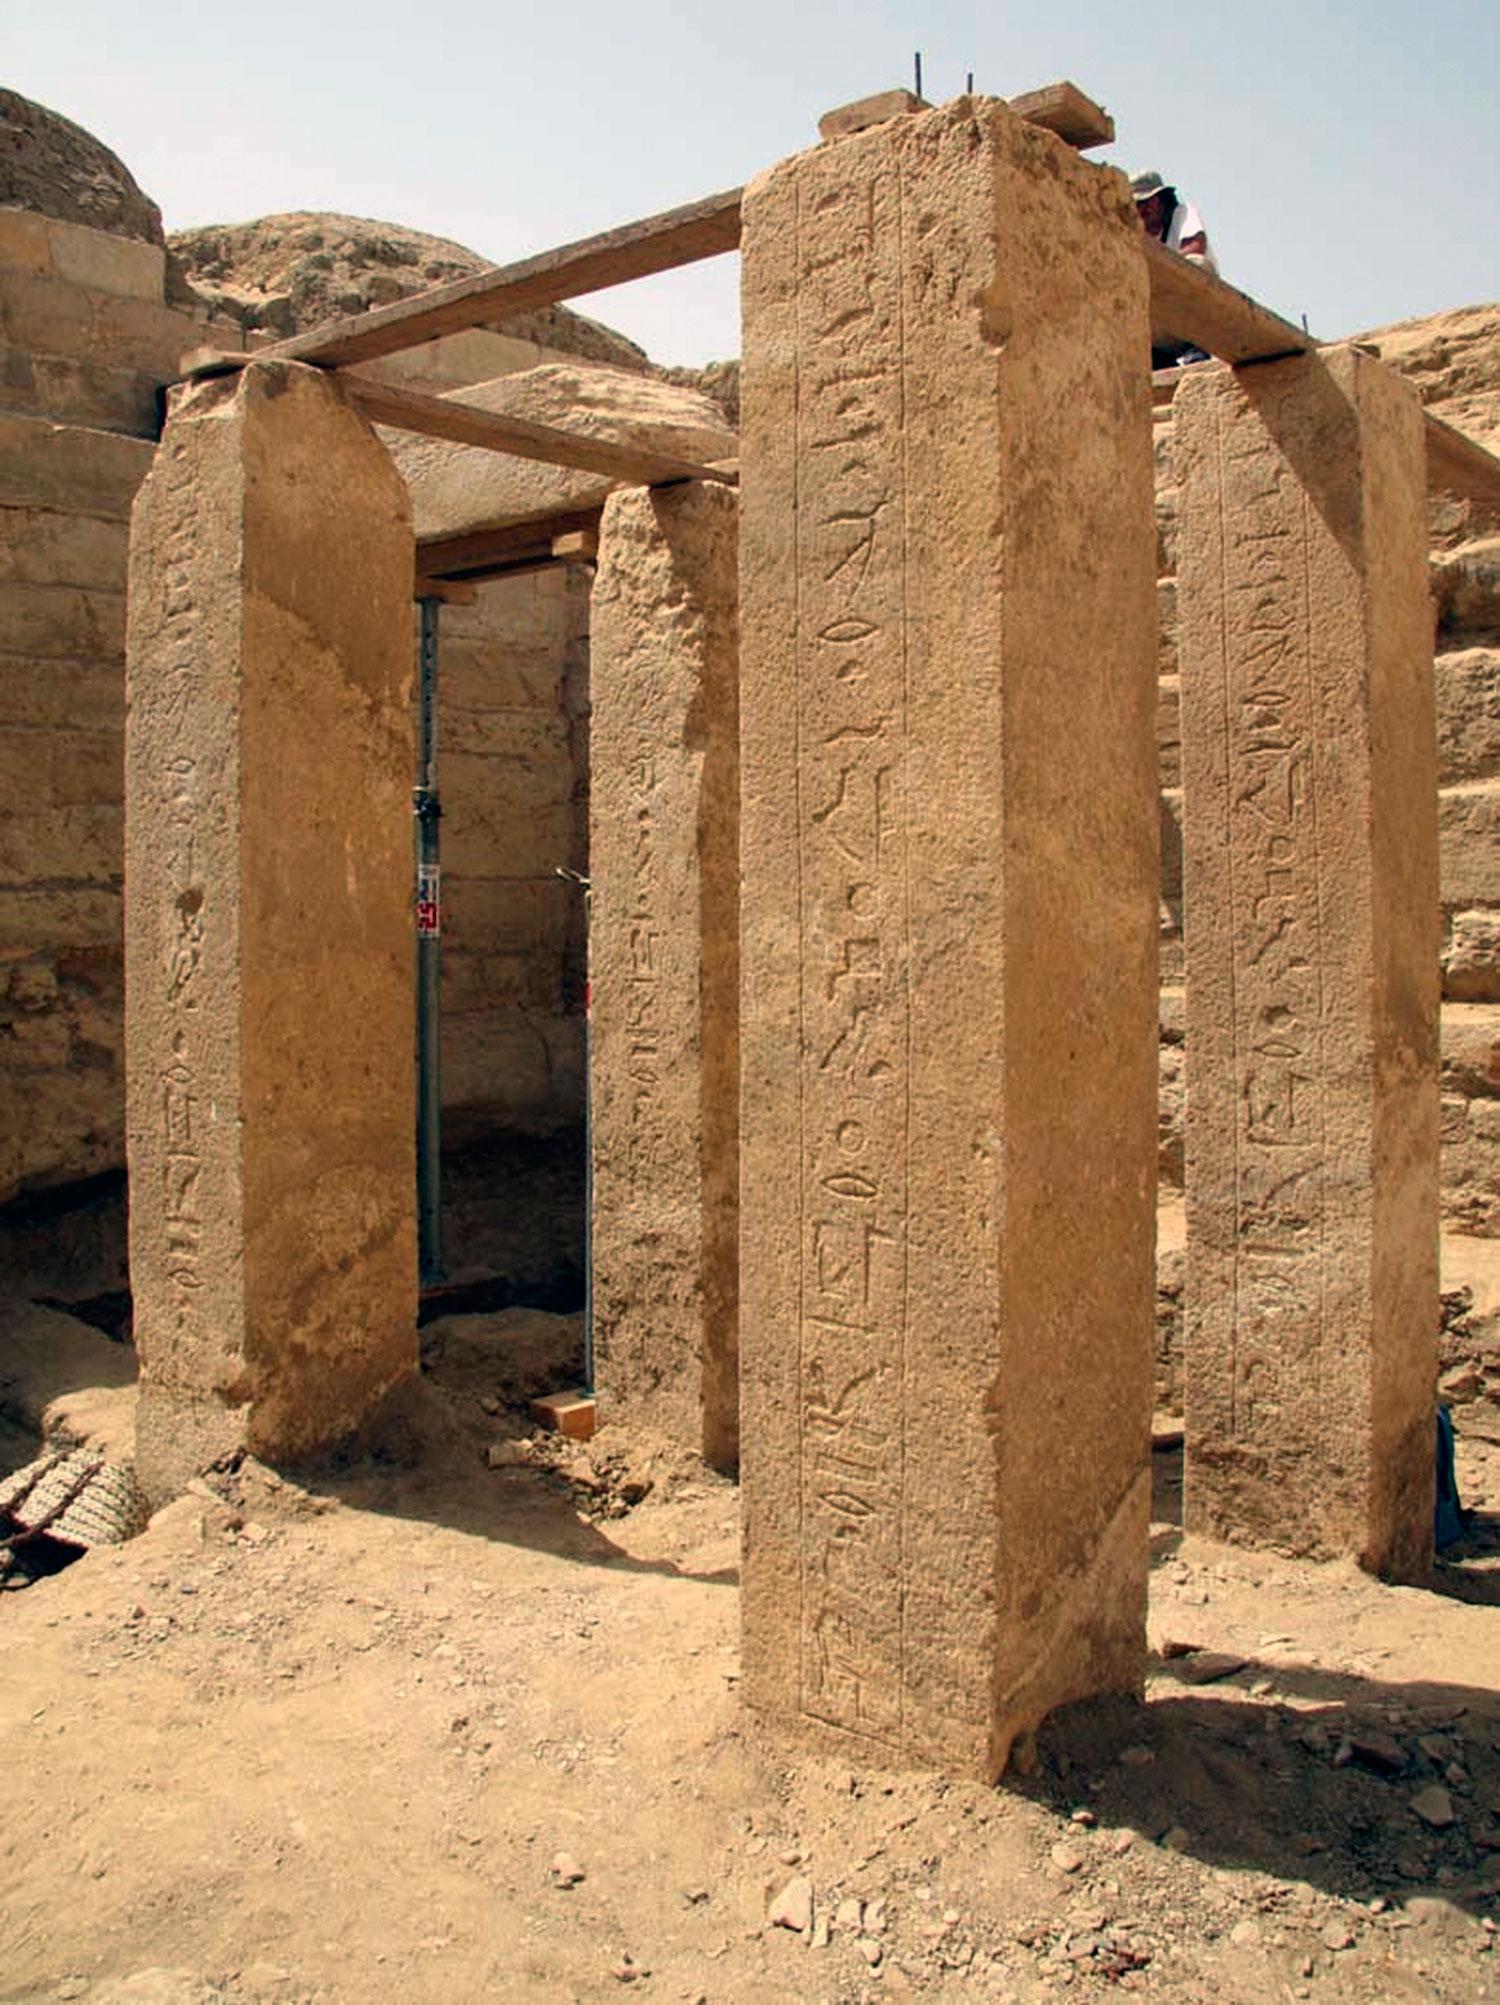 Bild från Abu Sir, där många faraoniska gravar hittats.